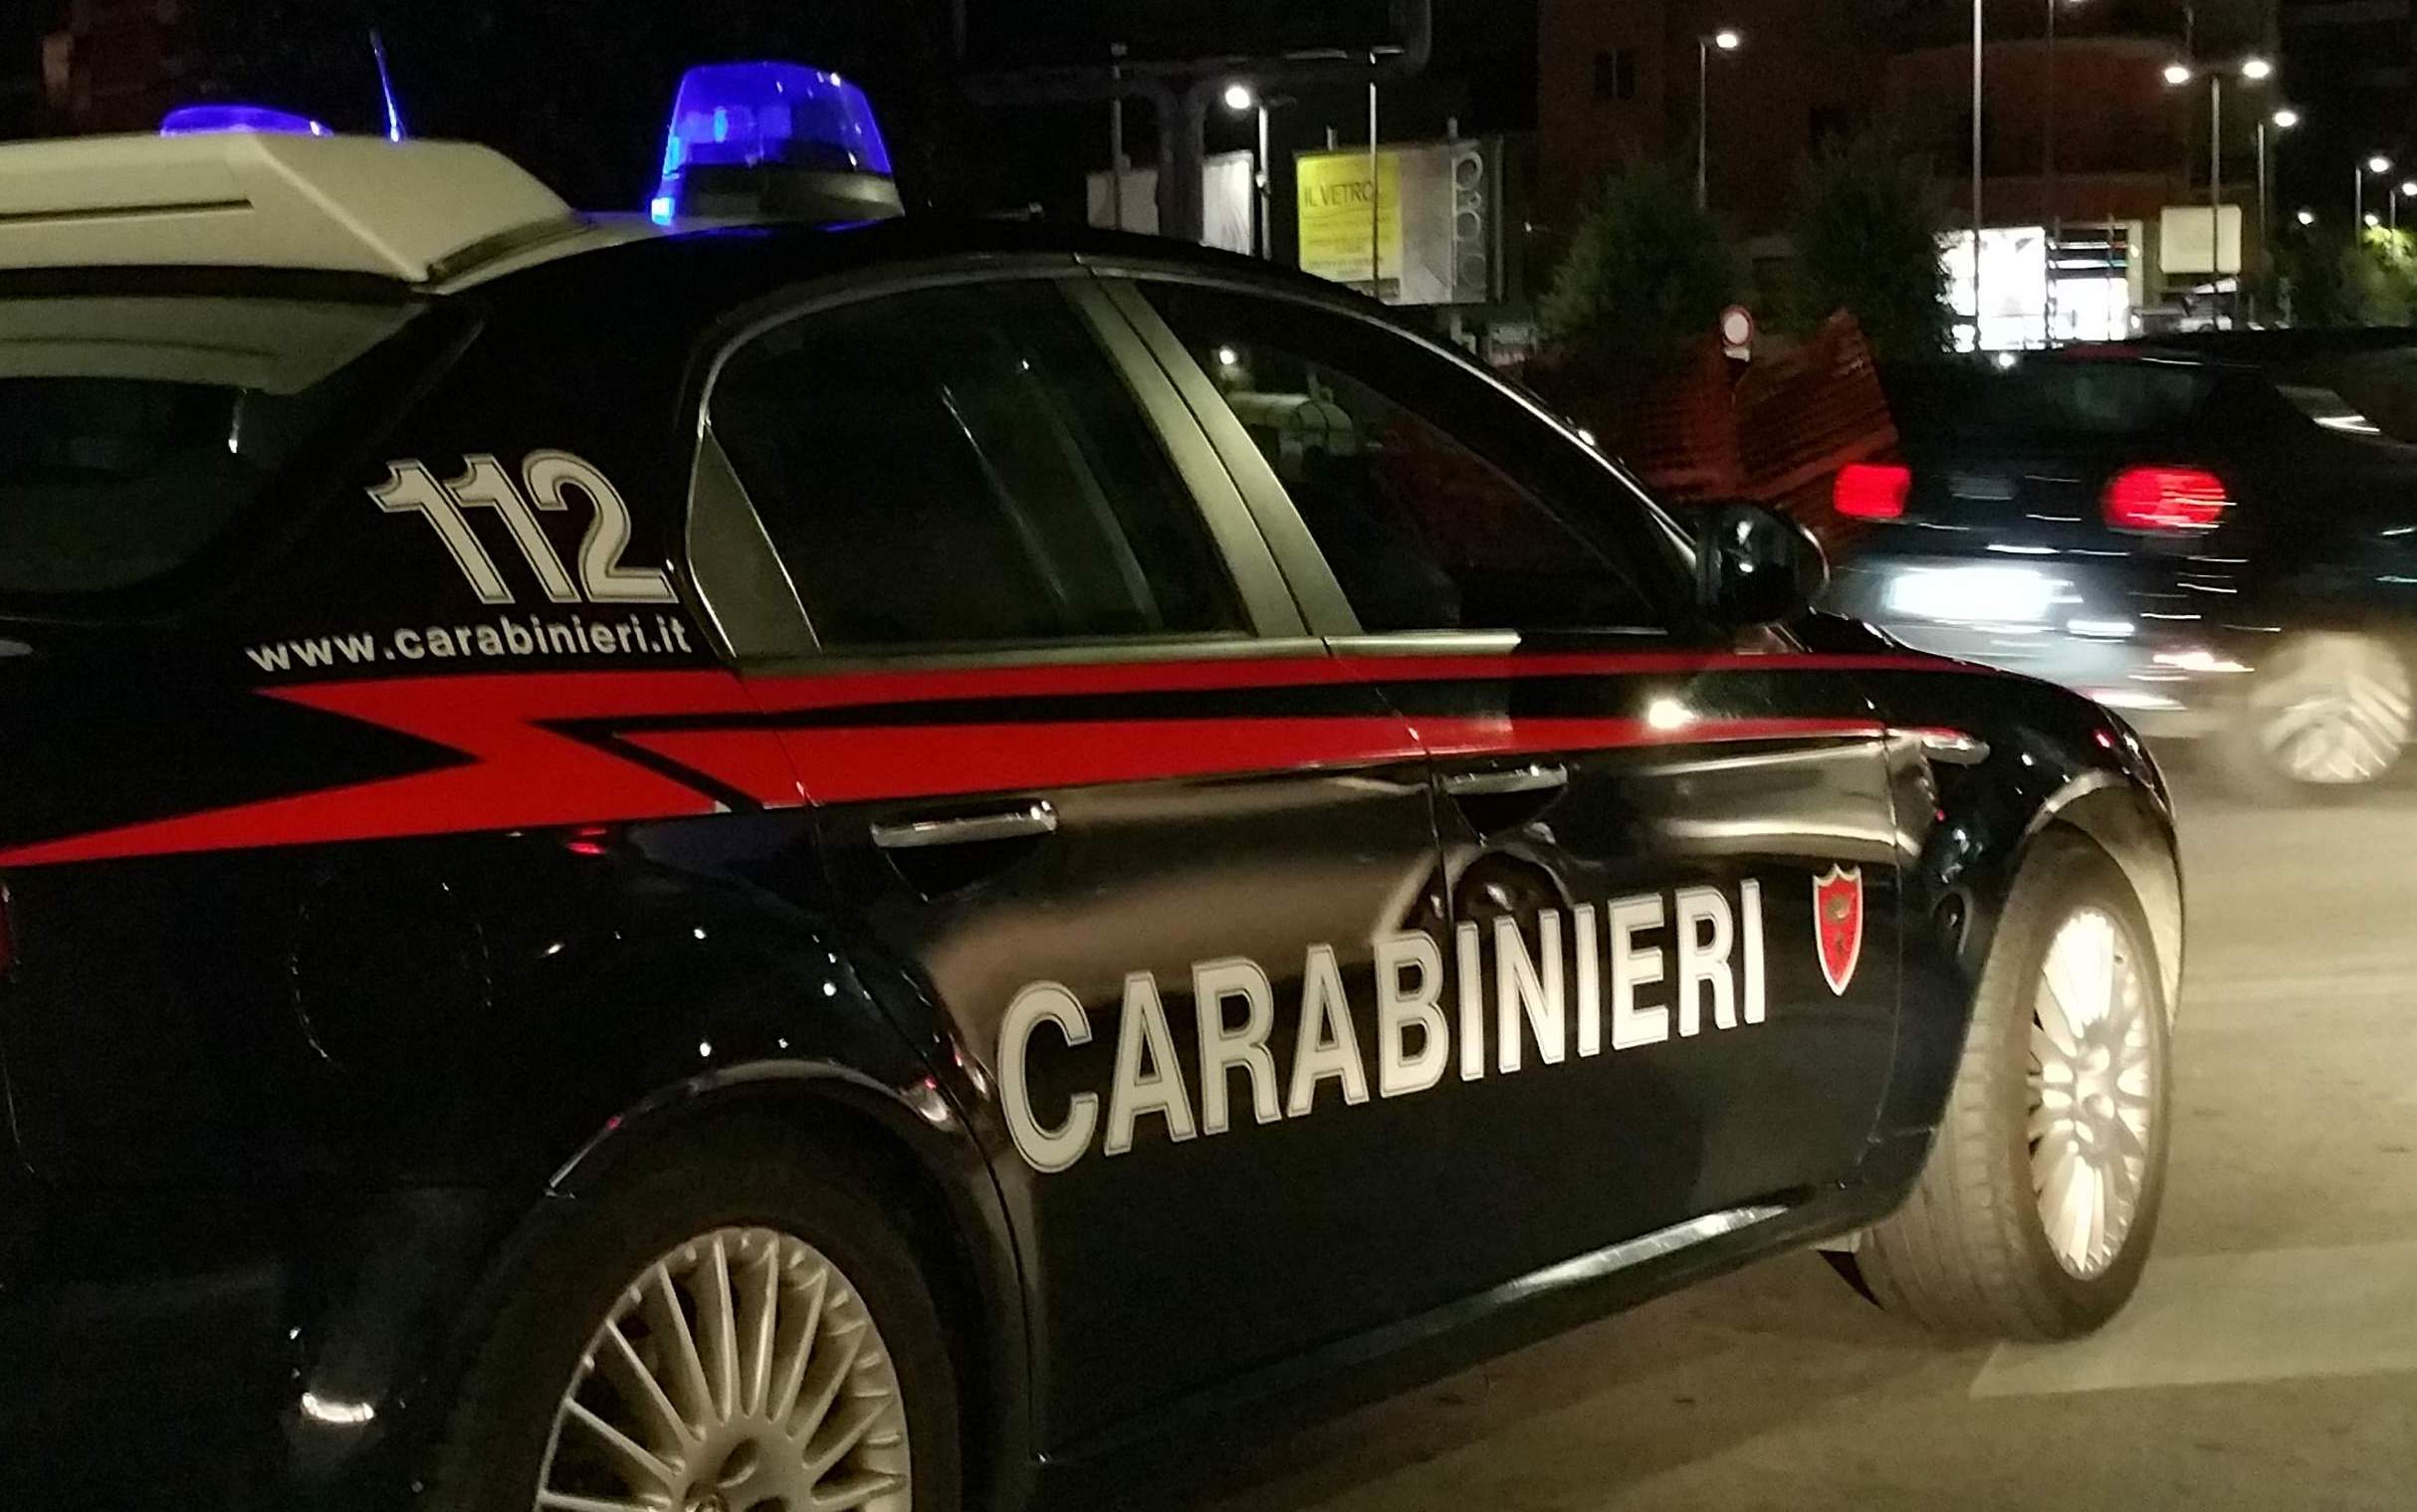 Dugenta| Tentano furto all’interno di una cava: Carabinieri bloccano e denunciano due pregiudicati